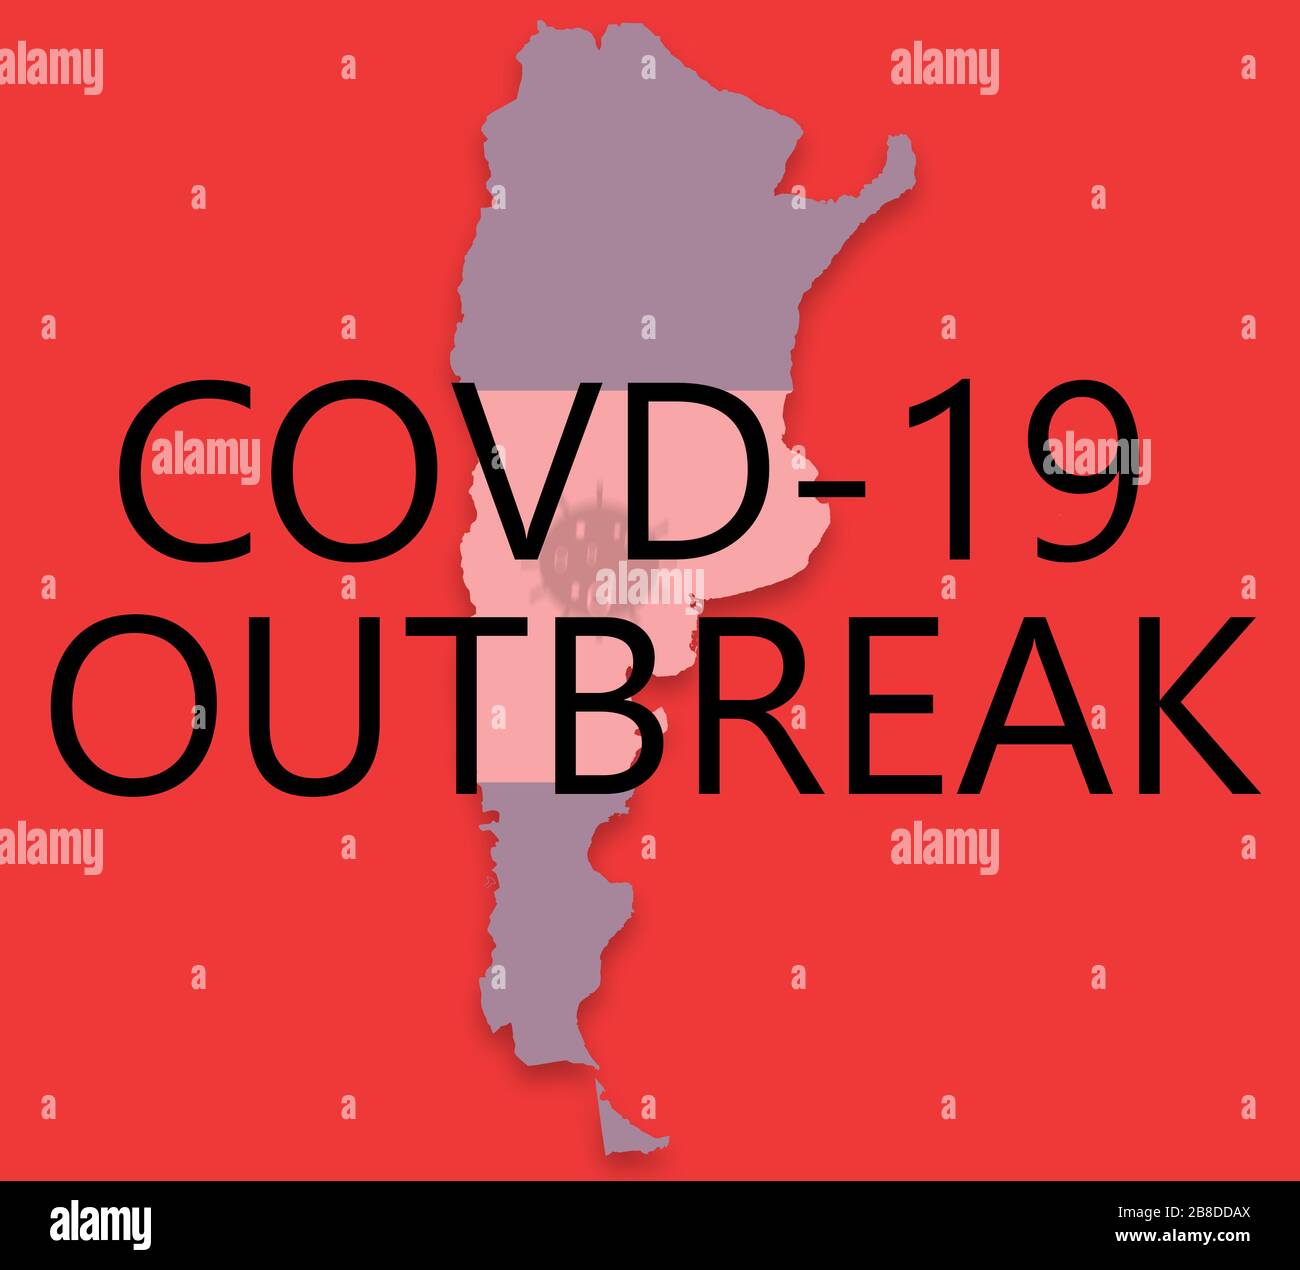 Esempio illustrativo dell'epidemia di Covid-19, coronavirus o sars cov 2 in argentina con mappa e bandiera. Foto Stock